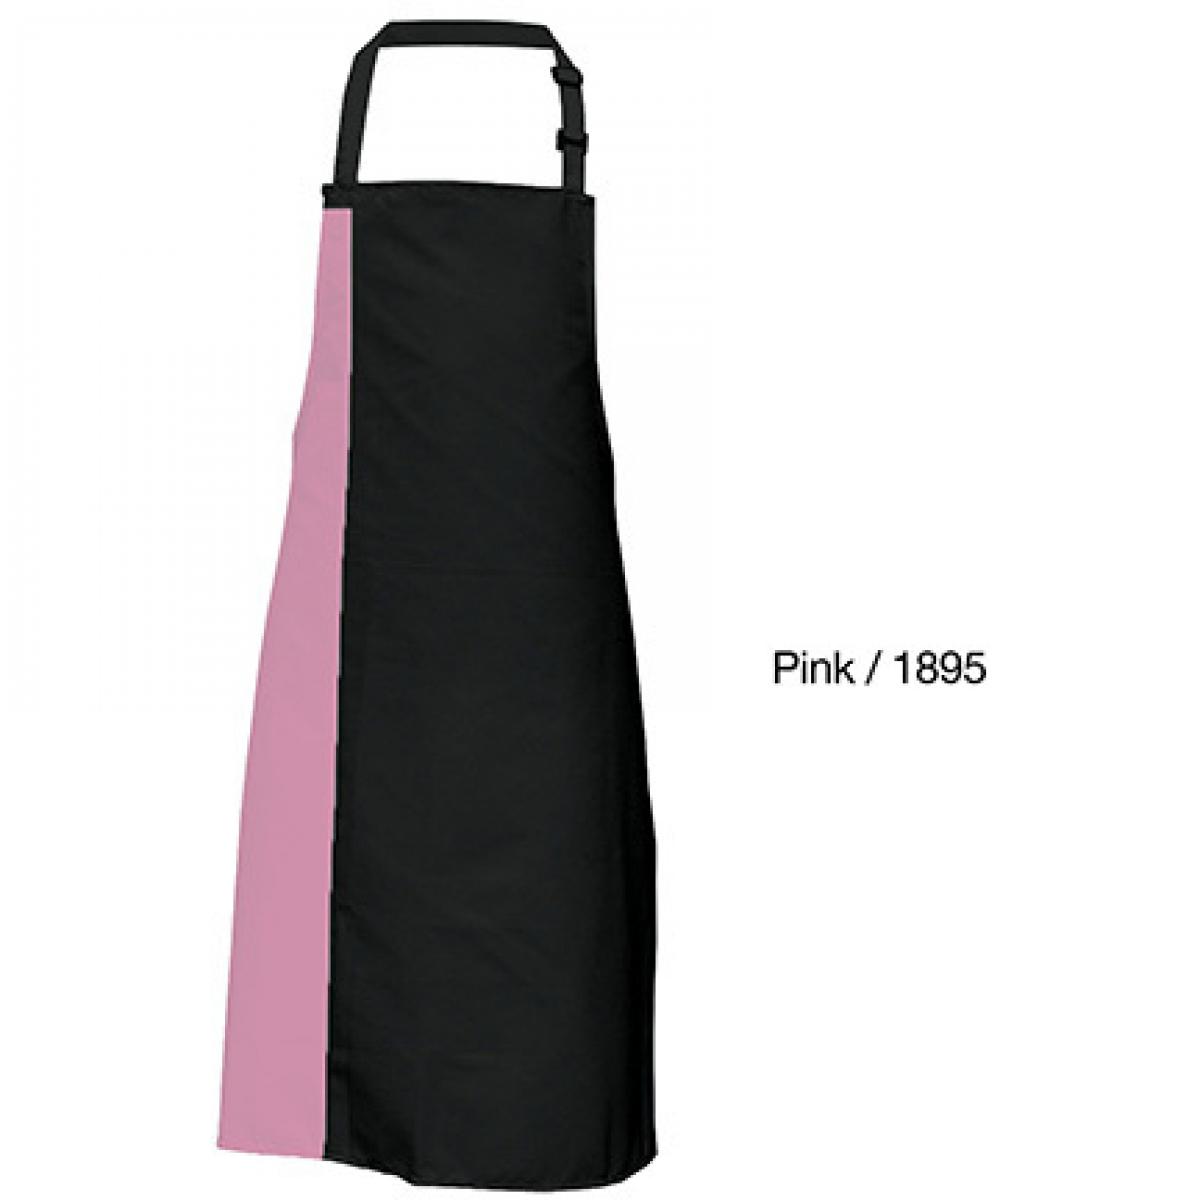 Hersteller: Link Kitchen Wear Herstellernummer: DS8572 Artikelbezeichnung: Duo Apron - 72 x 85 cm - Waschbar bis 60 °C Farbe: Black/Pink (ca. Pantone 1895)